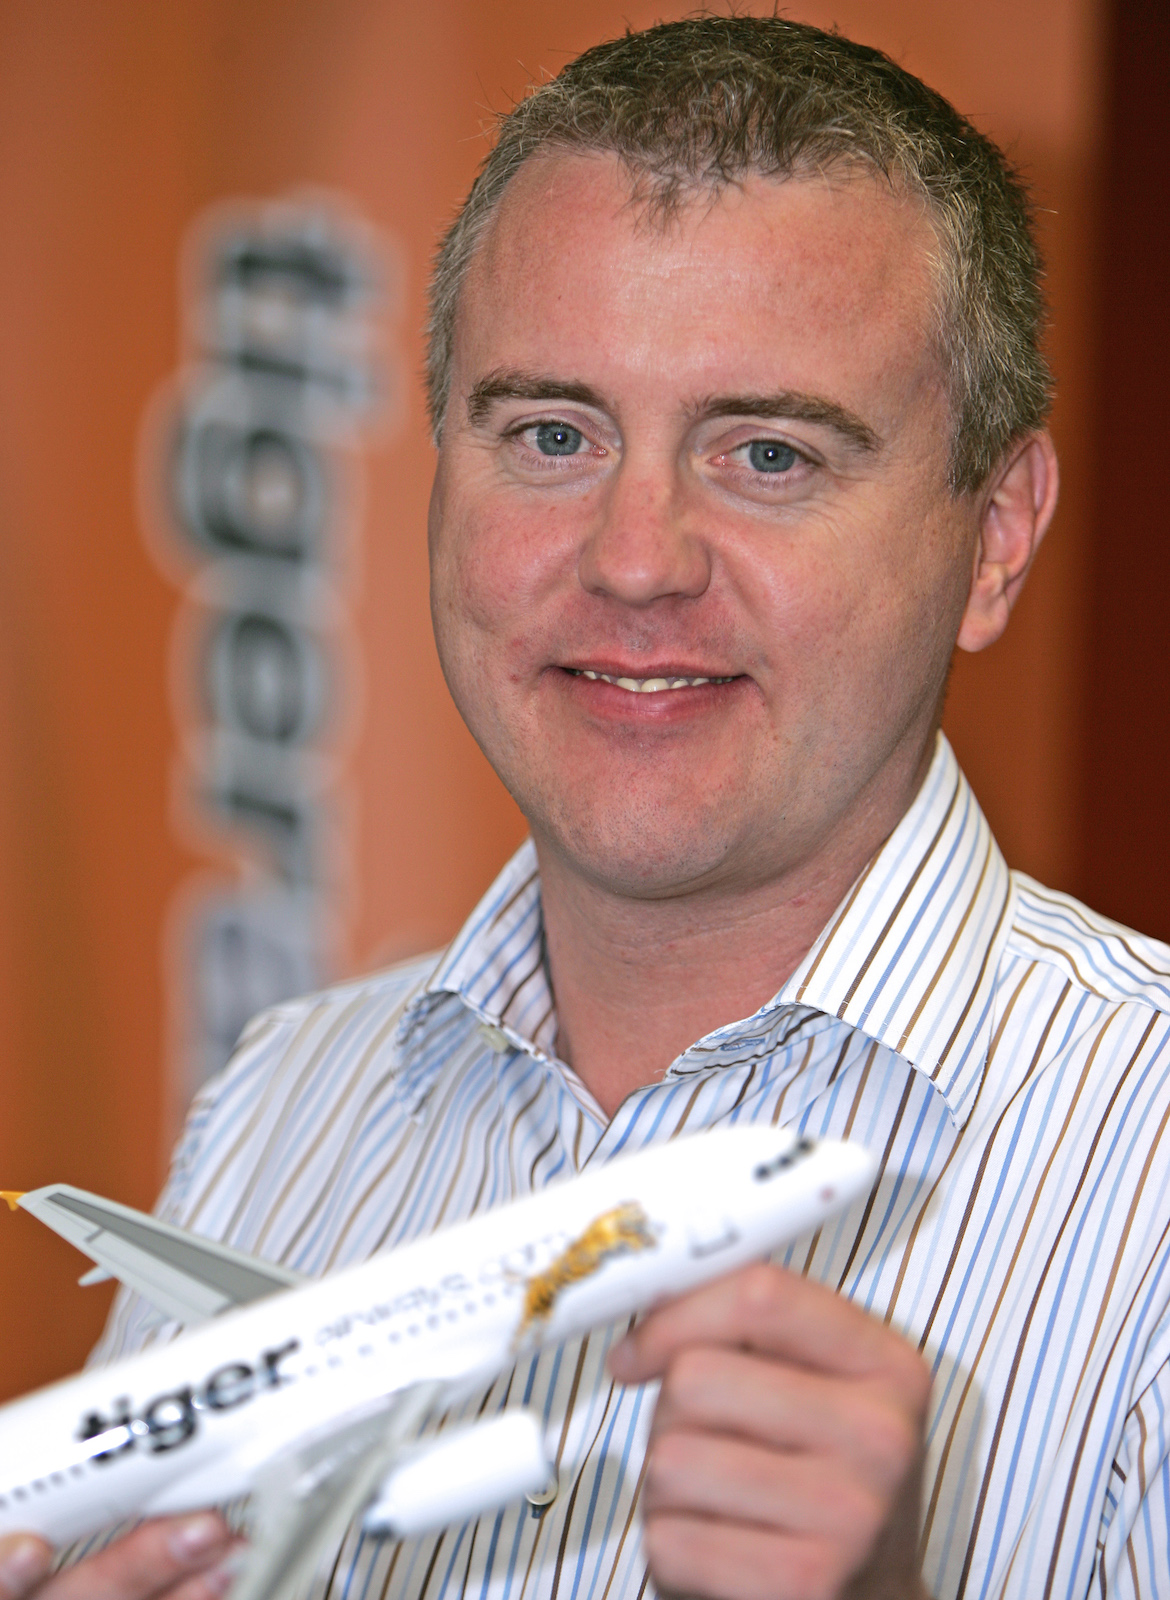 Tiger Airways Australia managing director Chris Ward. (Tiger Airways)